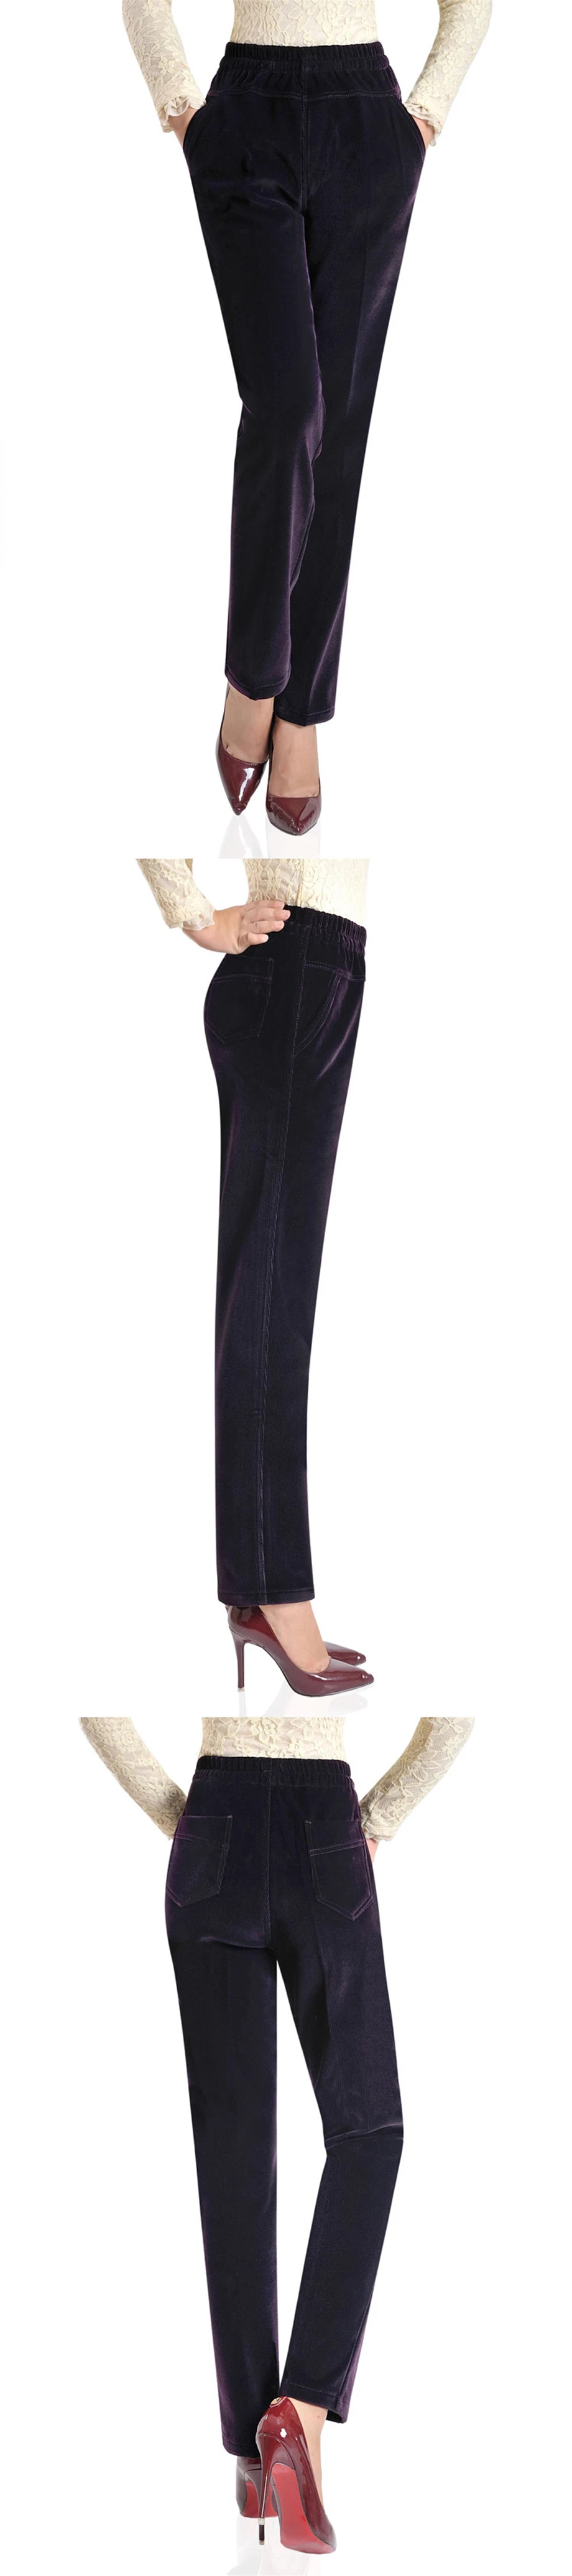 Плюс размеры 3XL добавить Велет вельветовые брюки для девочек для женщин Высокое качество Высокая талия Дамы officeмотобрюки осень зим